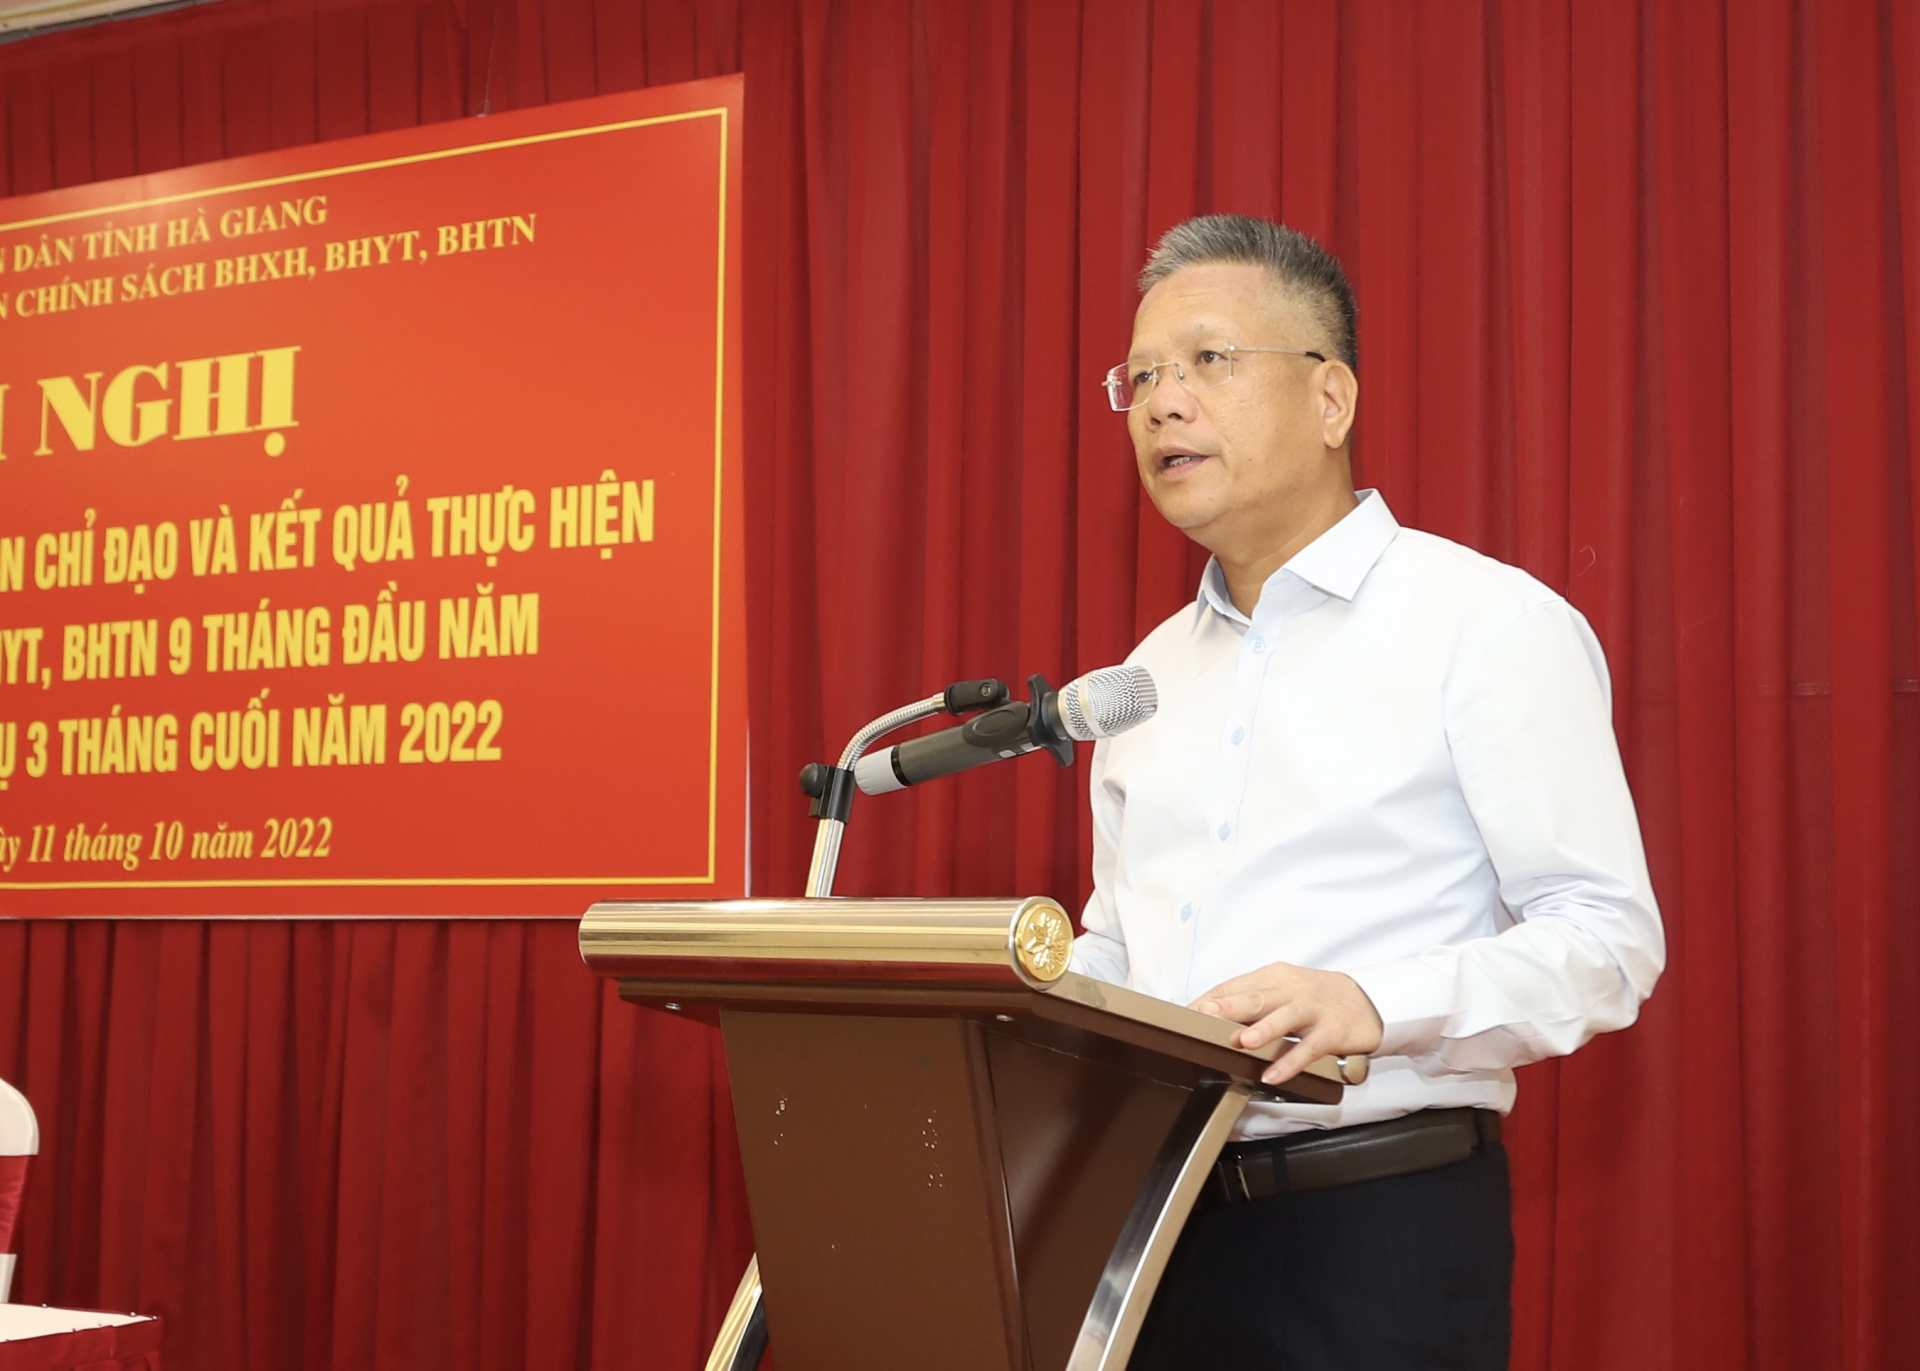 Phó Tổng Giám đốc BHXH Việt Nam Trần Đình Liệu phát biểu tại hội nghị